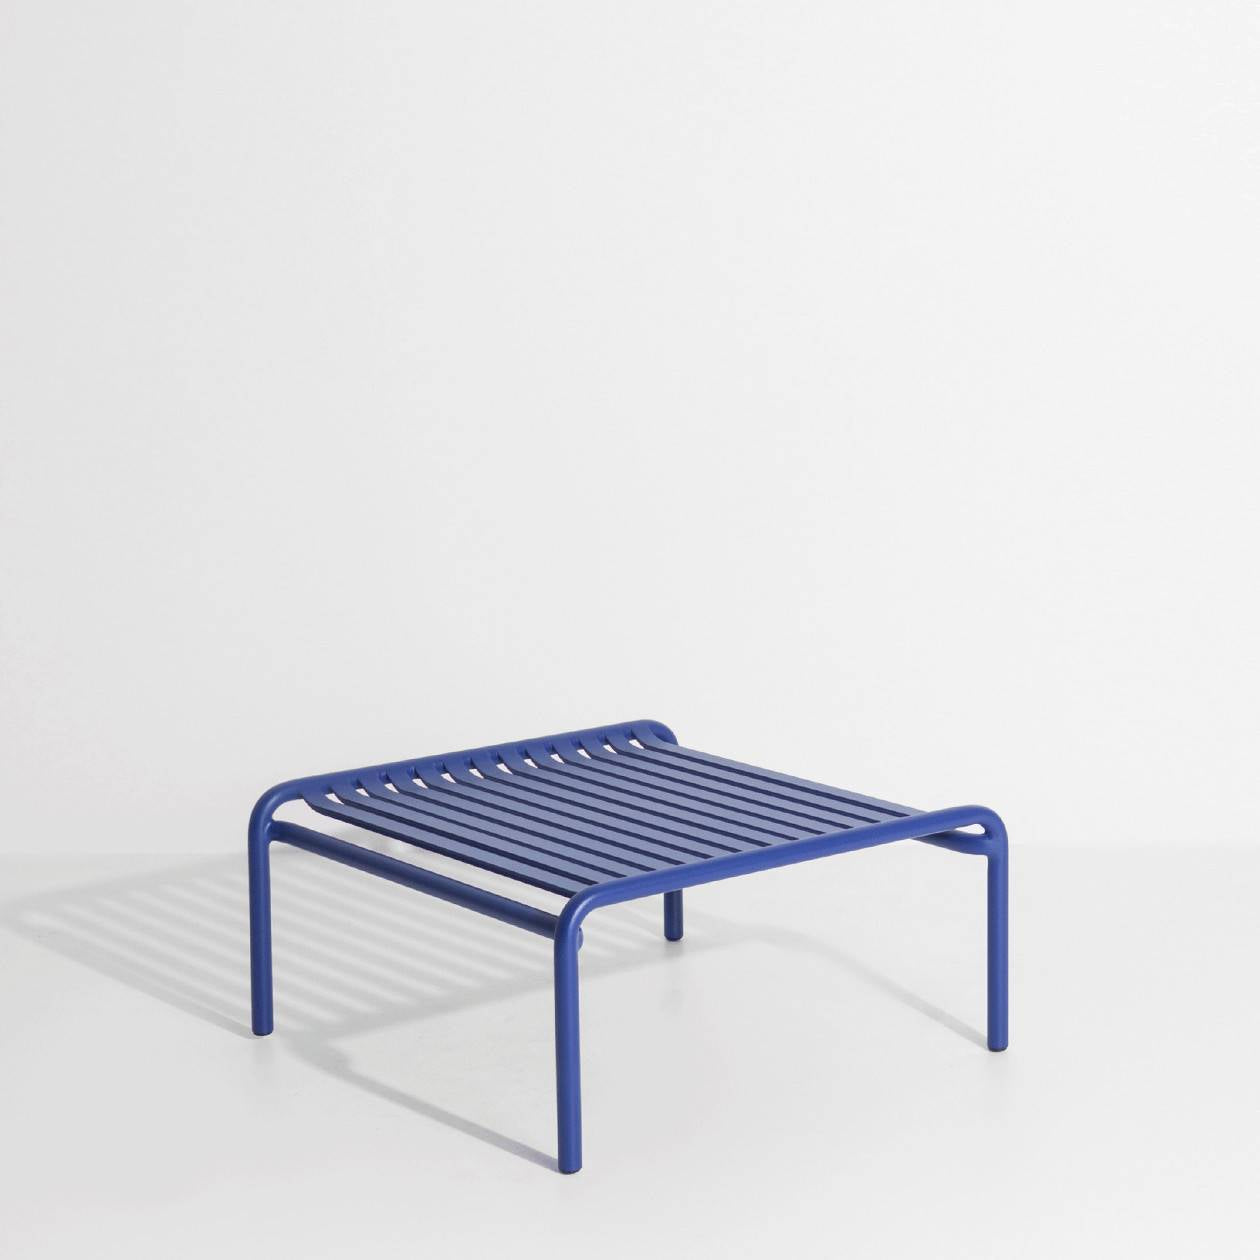 Week-End Coffee Table small in Blue präsentiert im Onlineshop von KAQTU Design AG. Beistelltisch Outdoor ist von Petite Friture